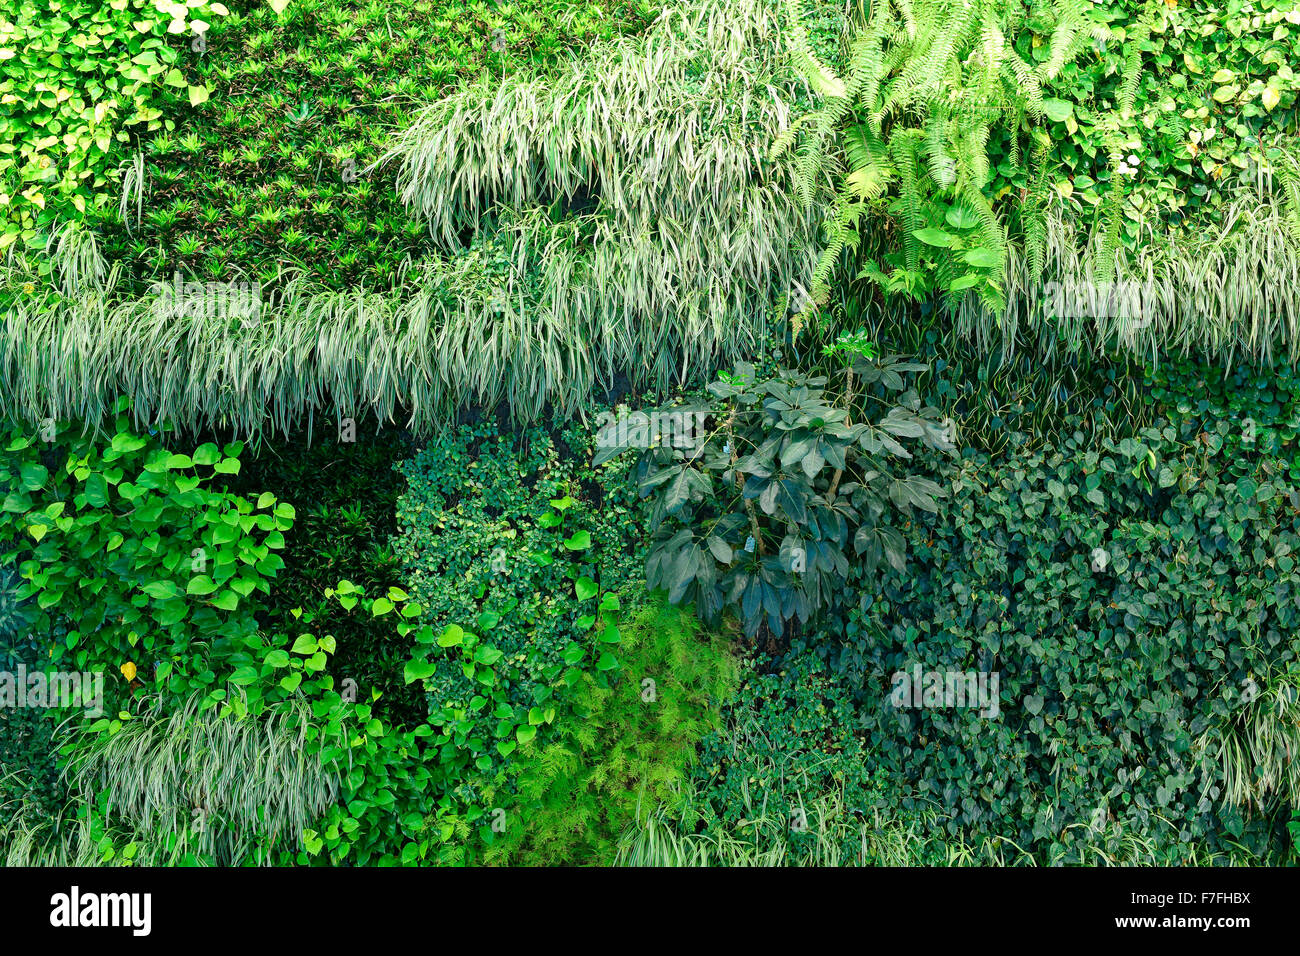 Un mur vivant contexte montrant la croissance luxuriante de plantes couvrant tout un mur Banque D'Images